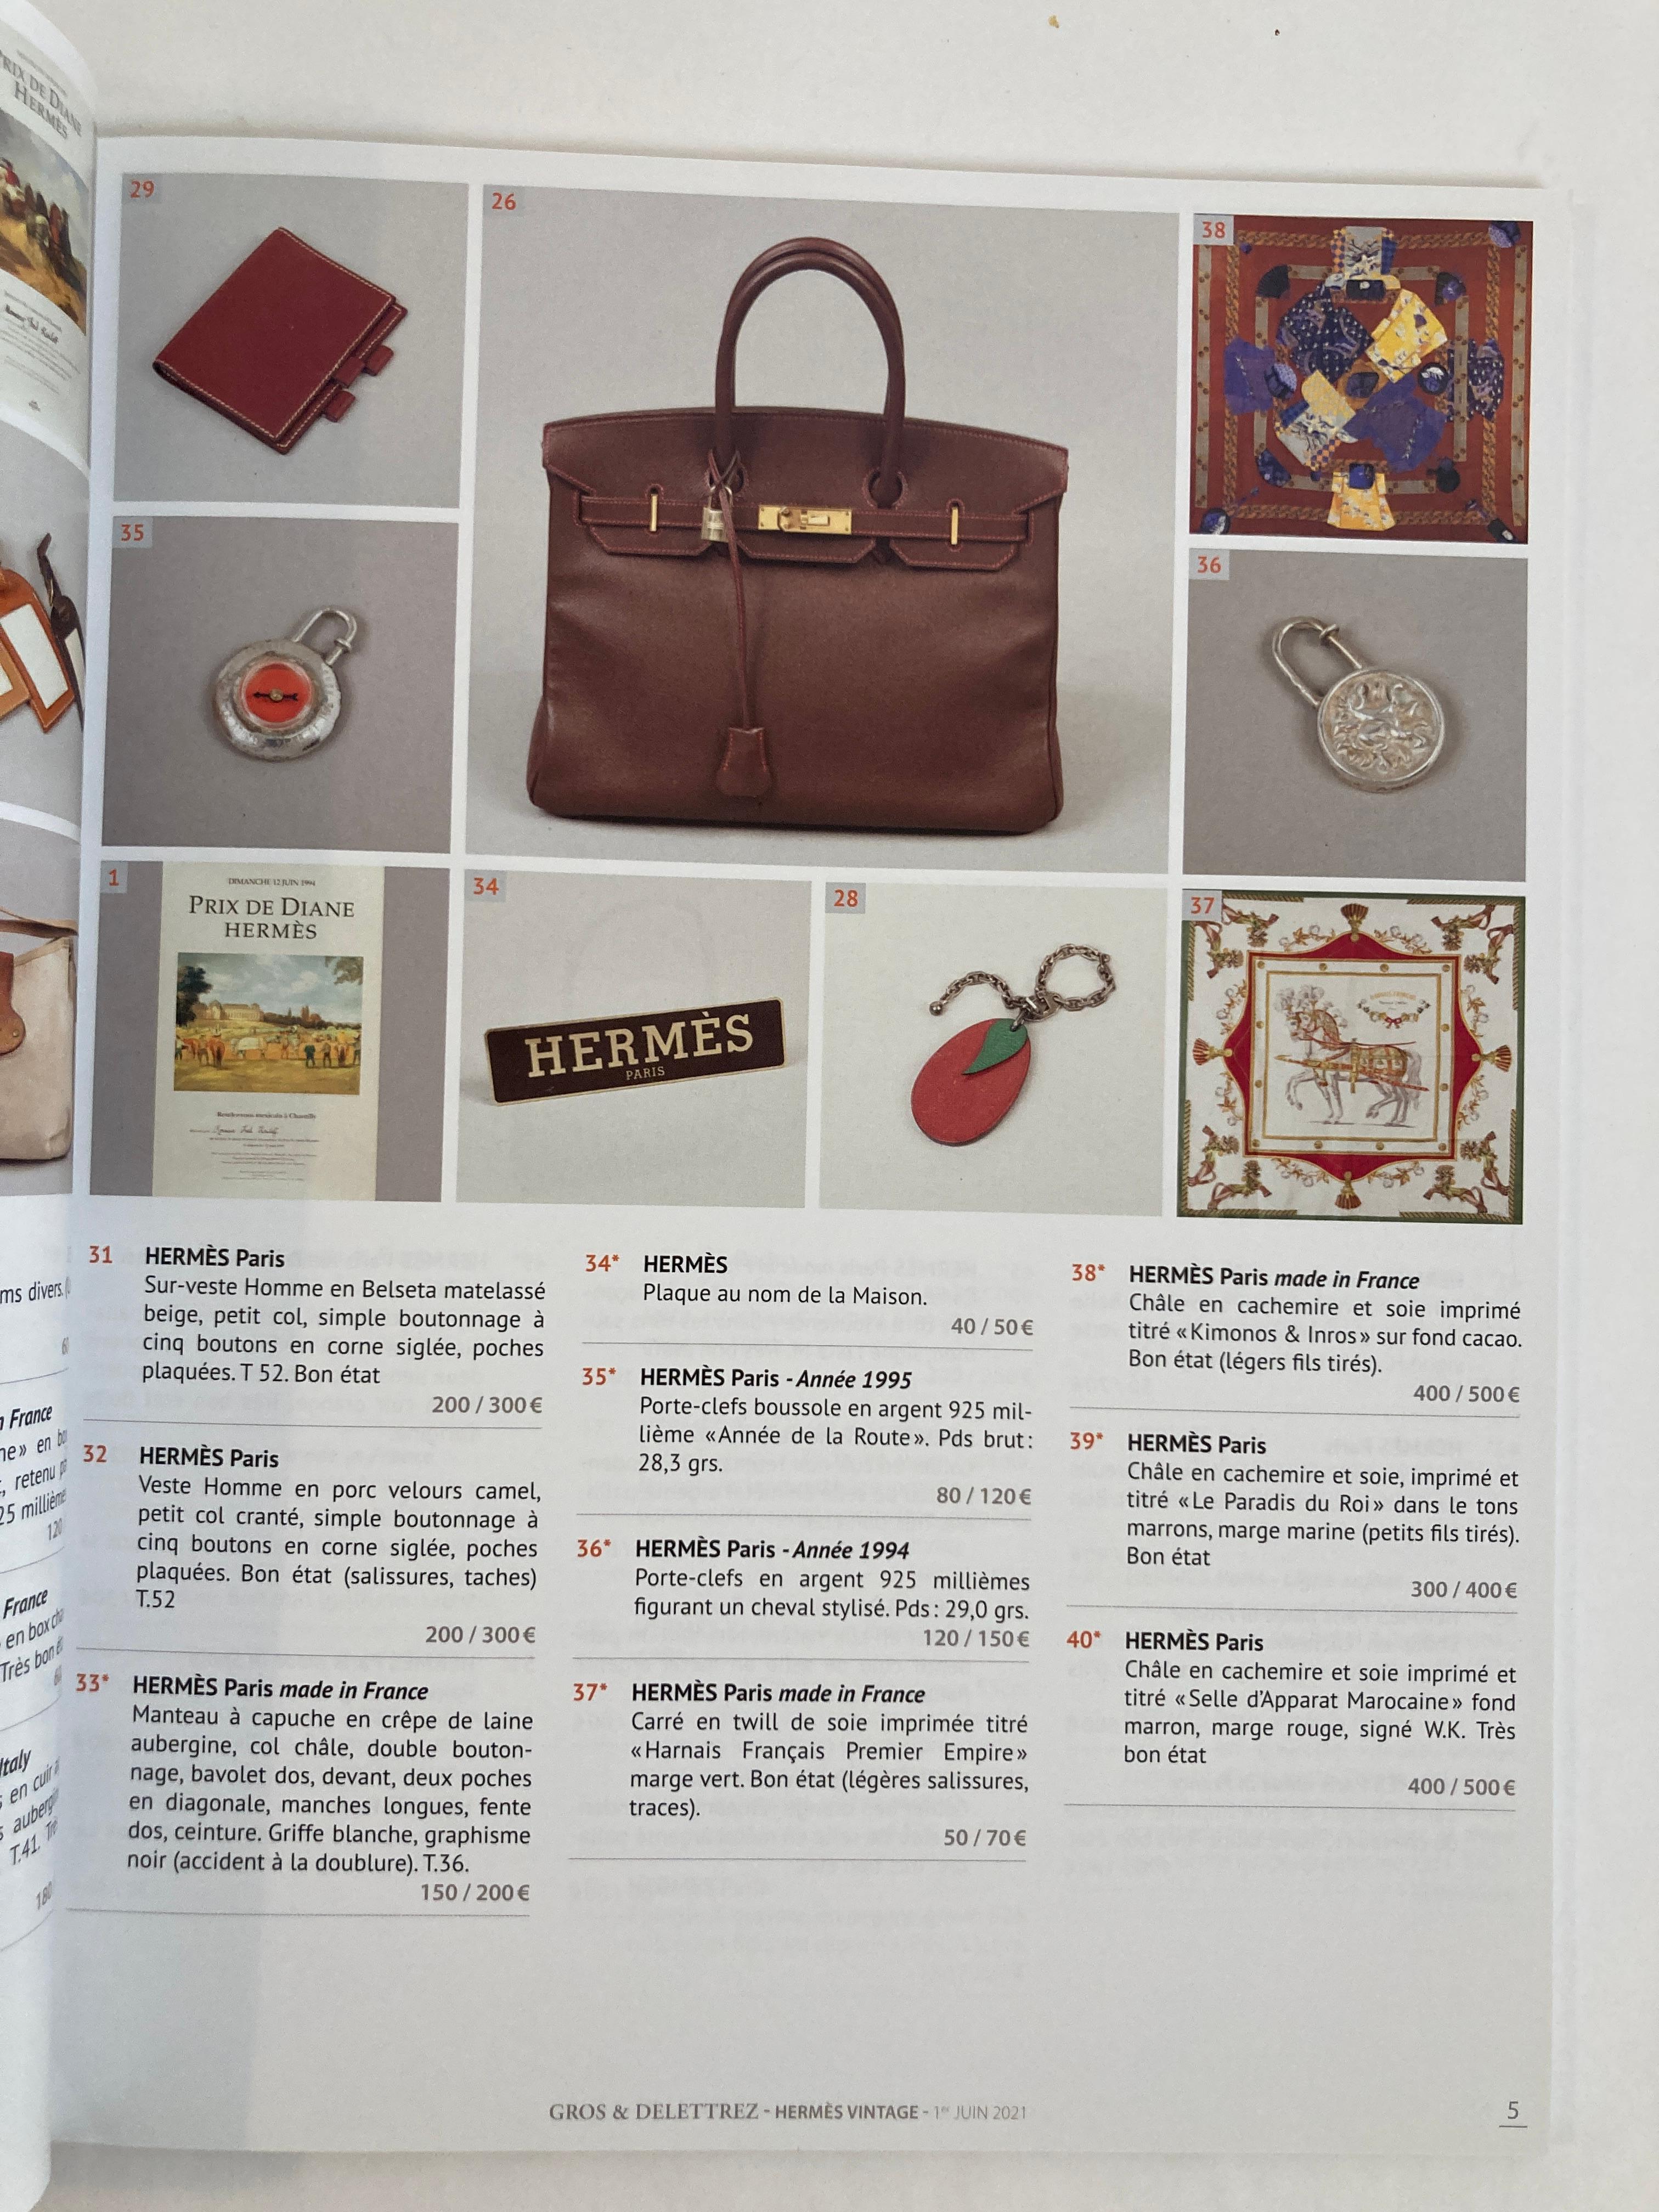 Gray Hermes Vintage Paris Auction Catalog 2021 Published by Gros & Delettrez For Sale